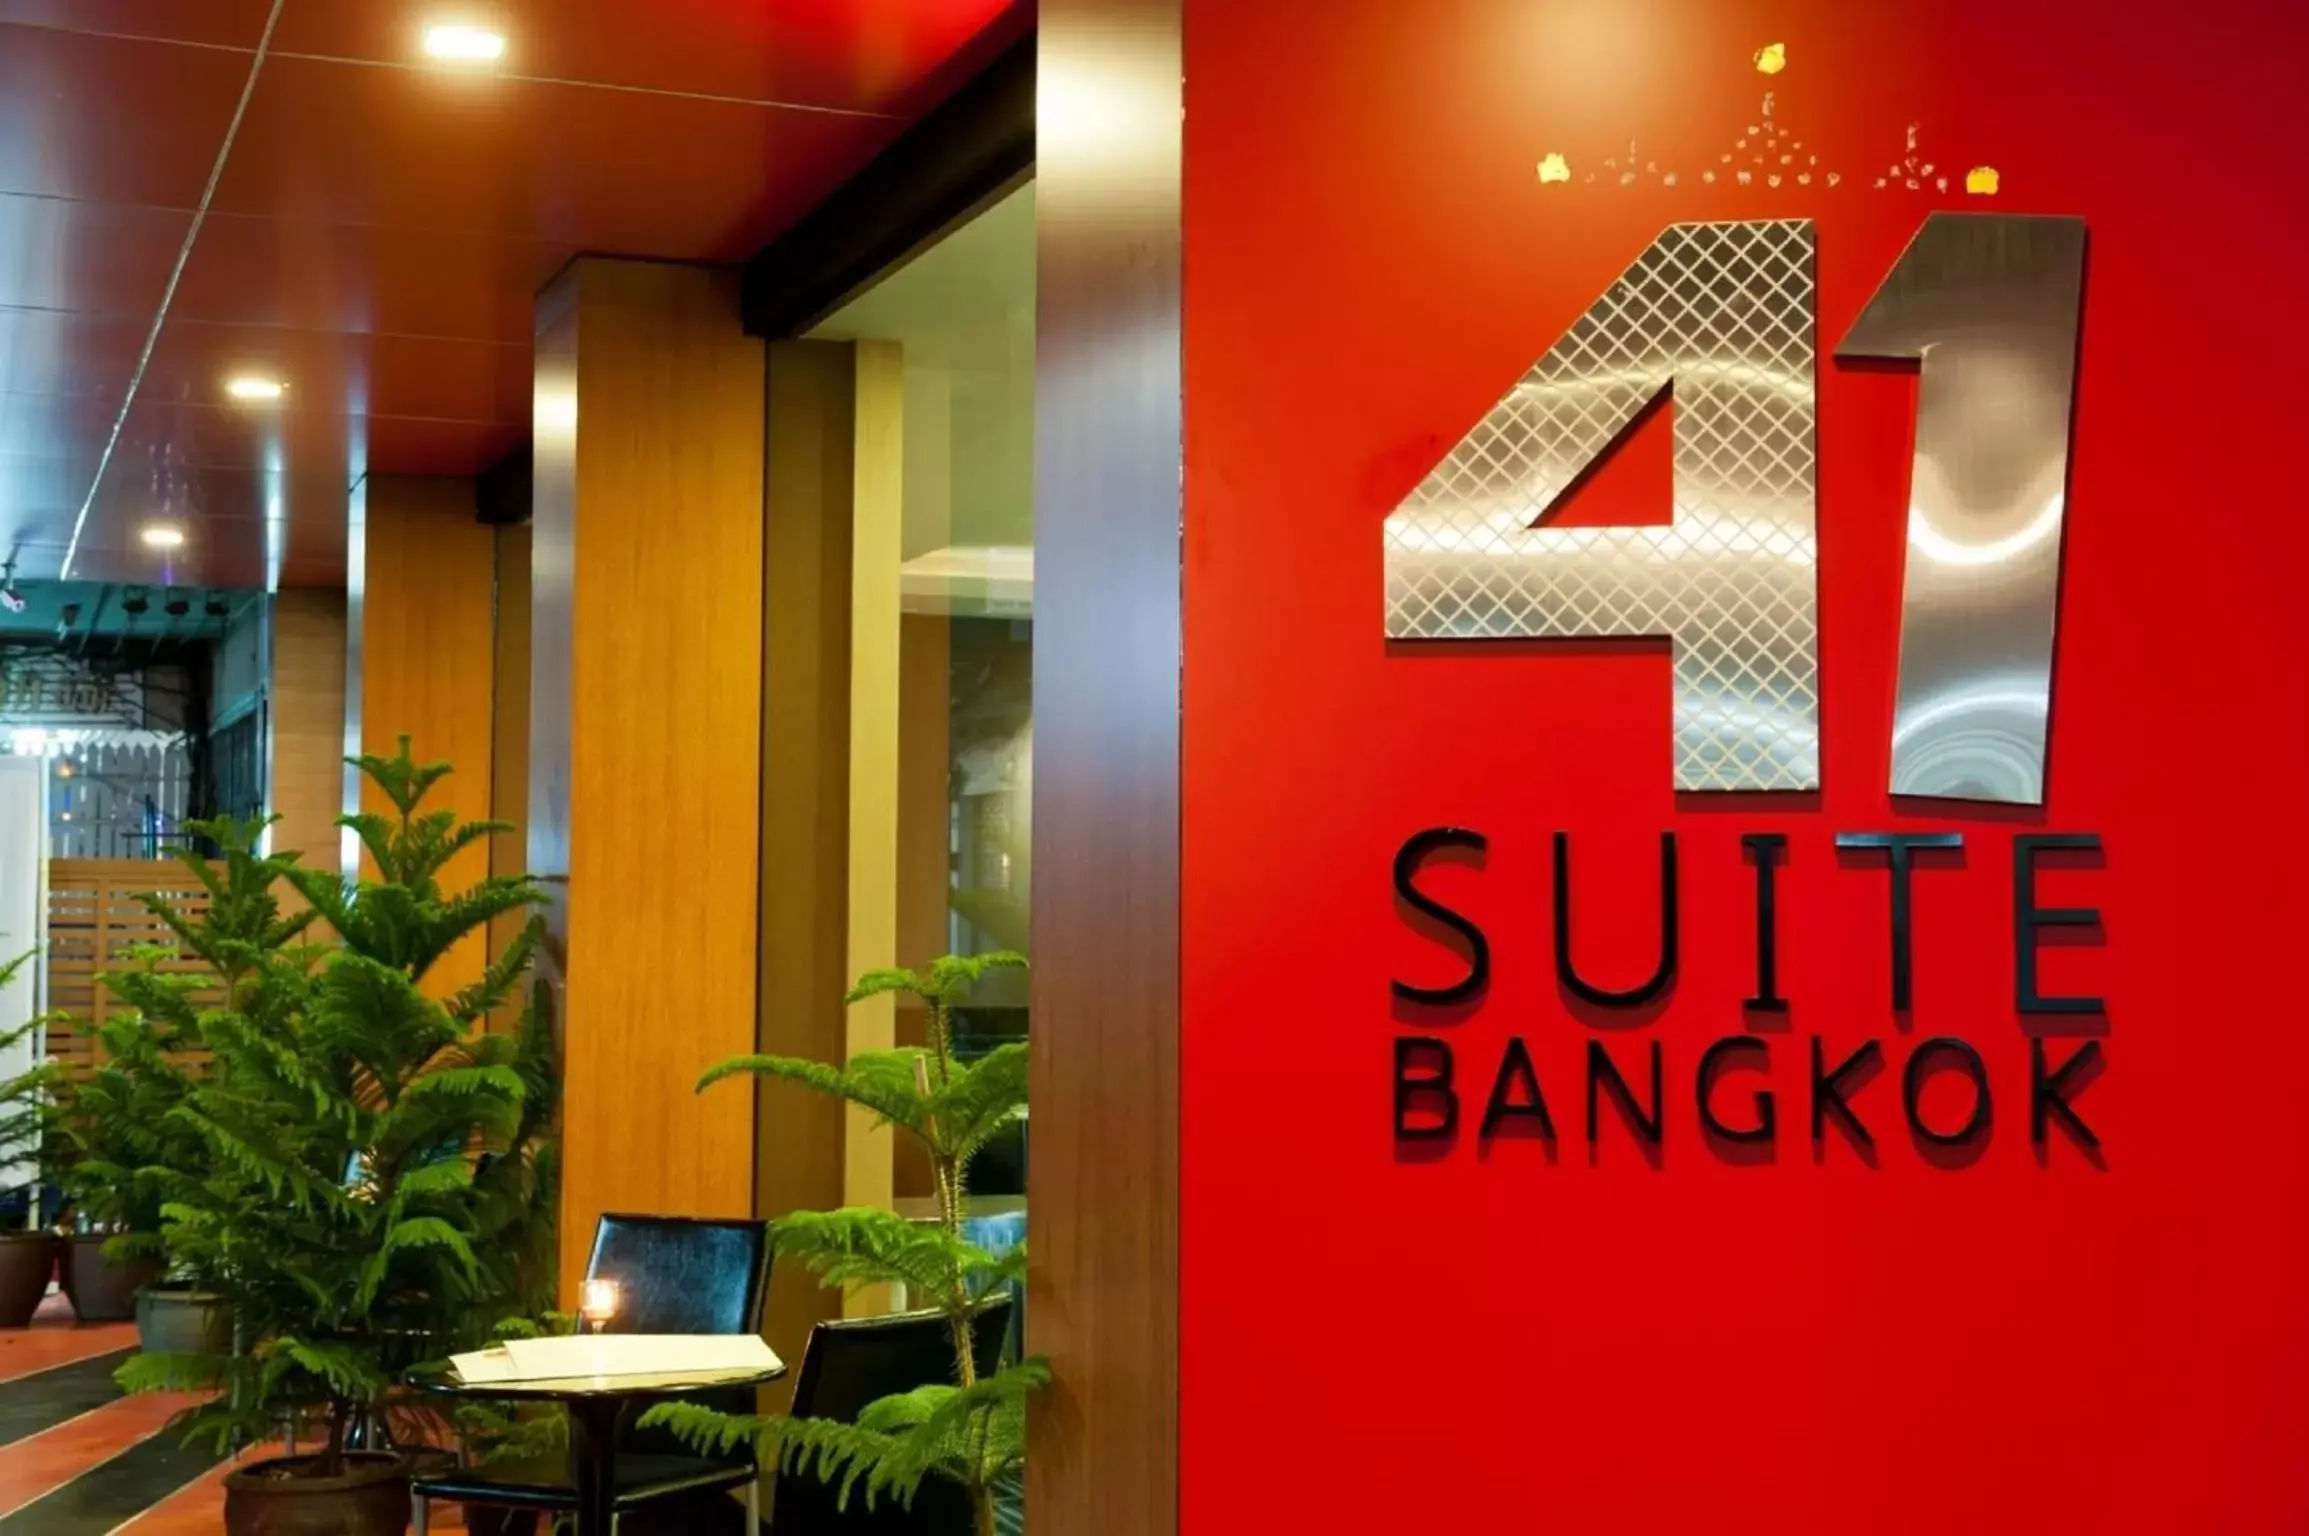 Decorative detail in 41 Suite Bangkok